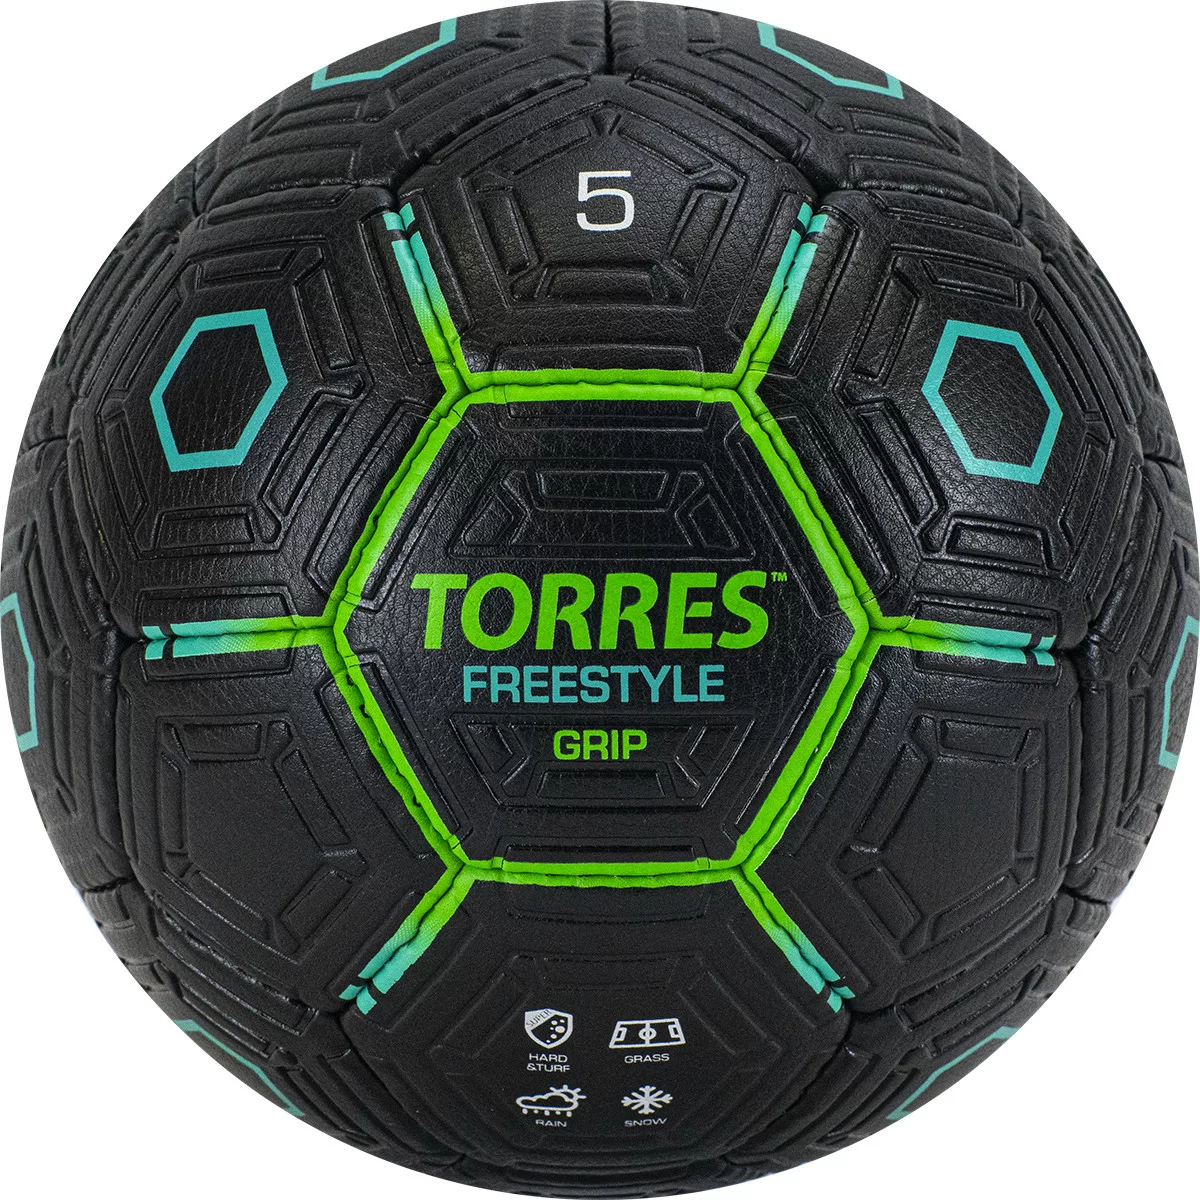 Реальное фото Мяч футбольный Torres Freestyle Grip р.5 32 панели PU черно-зеленый  F320765 от магазина СпортСЕ